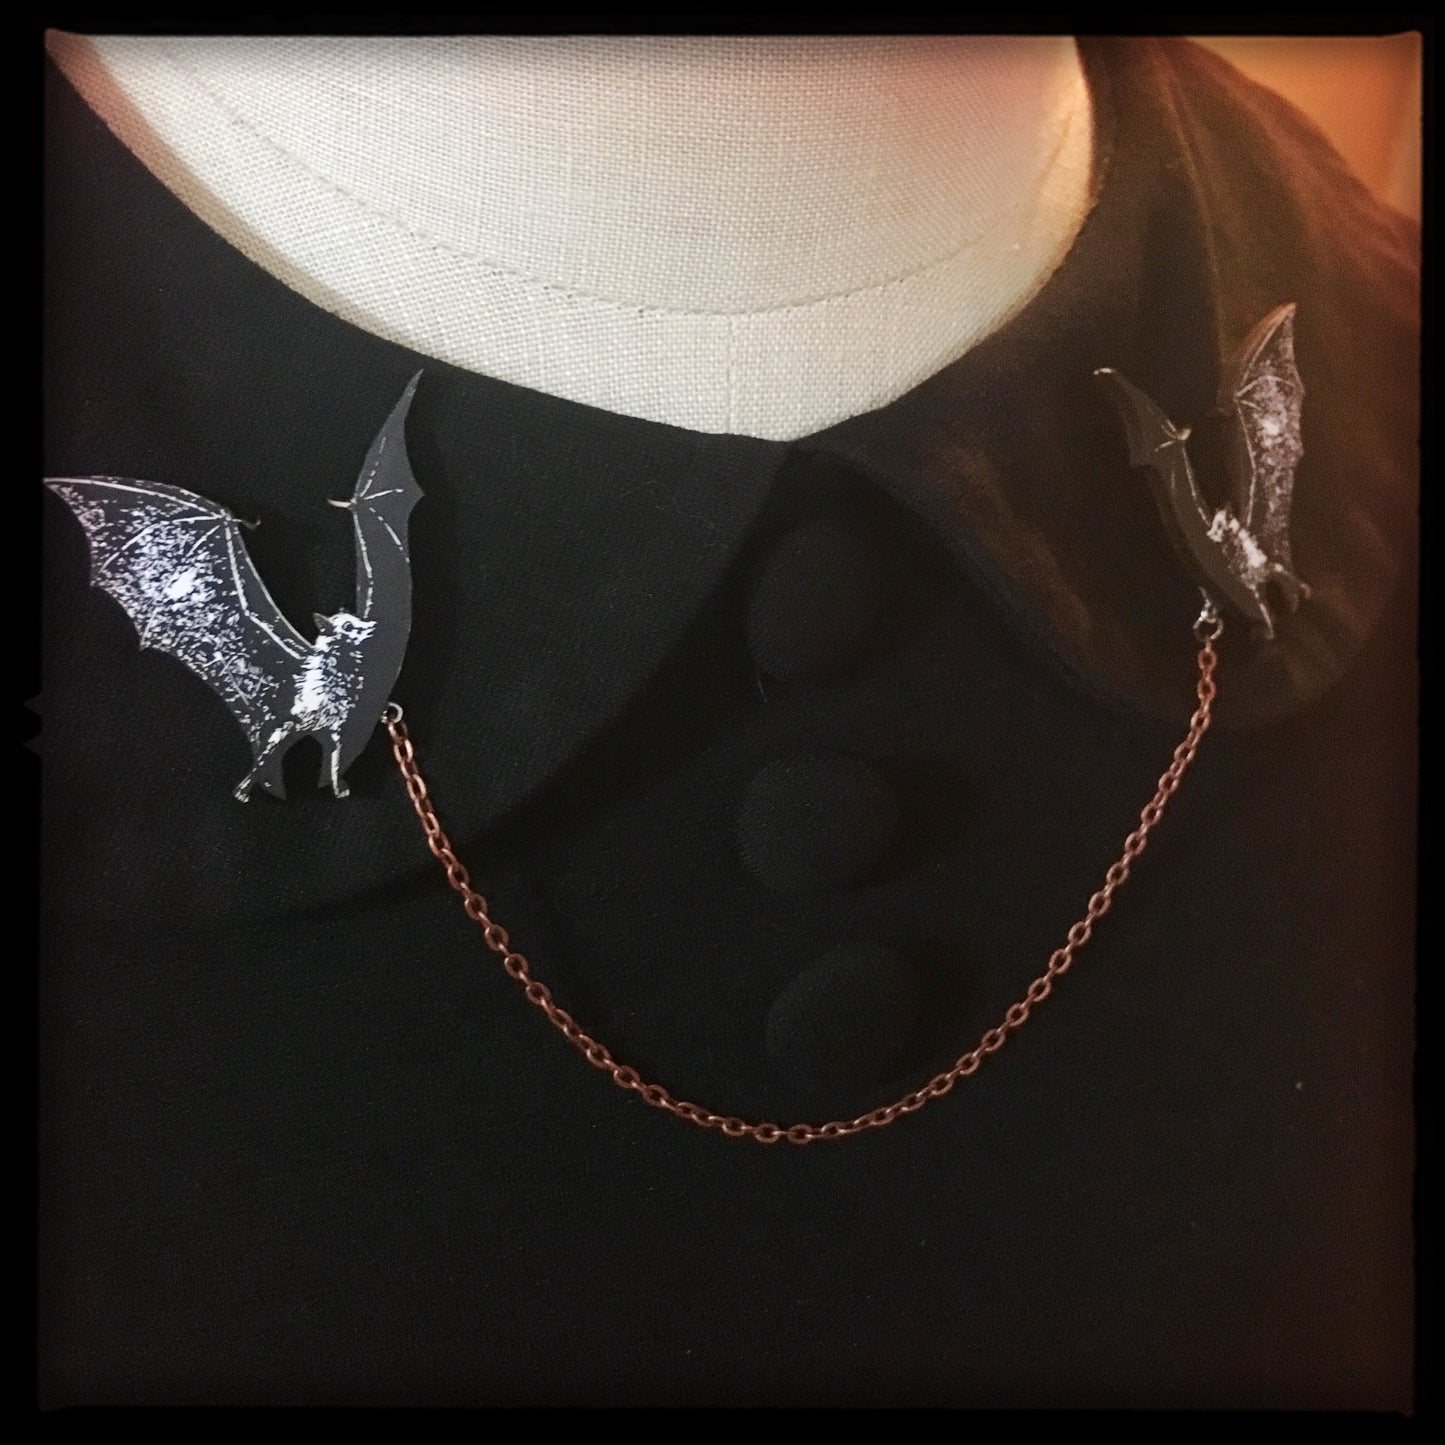 Bat Collar-Sweater Pin Set